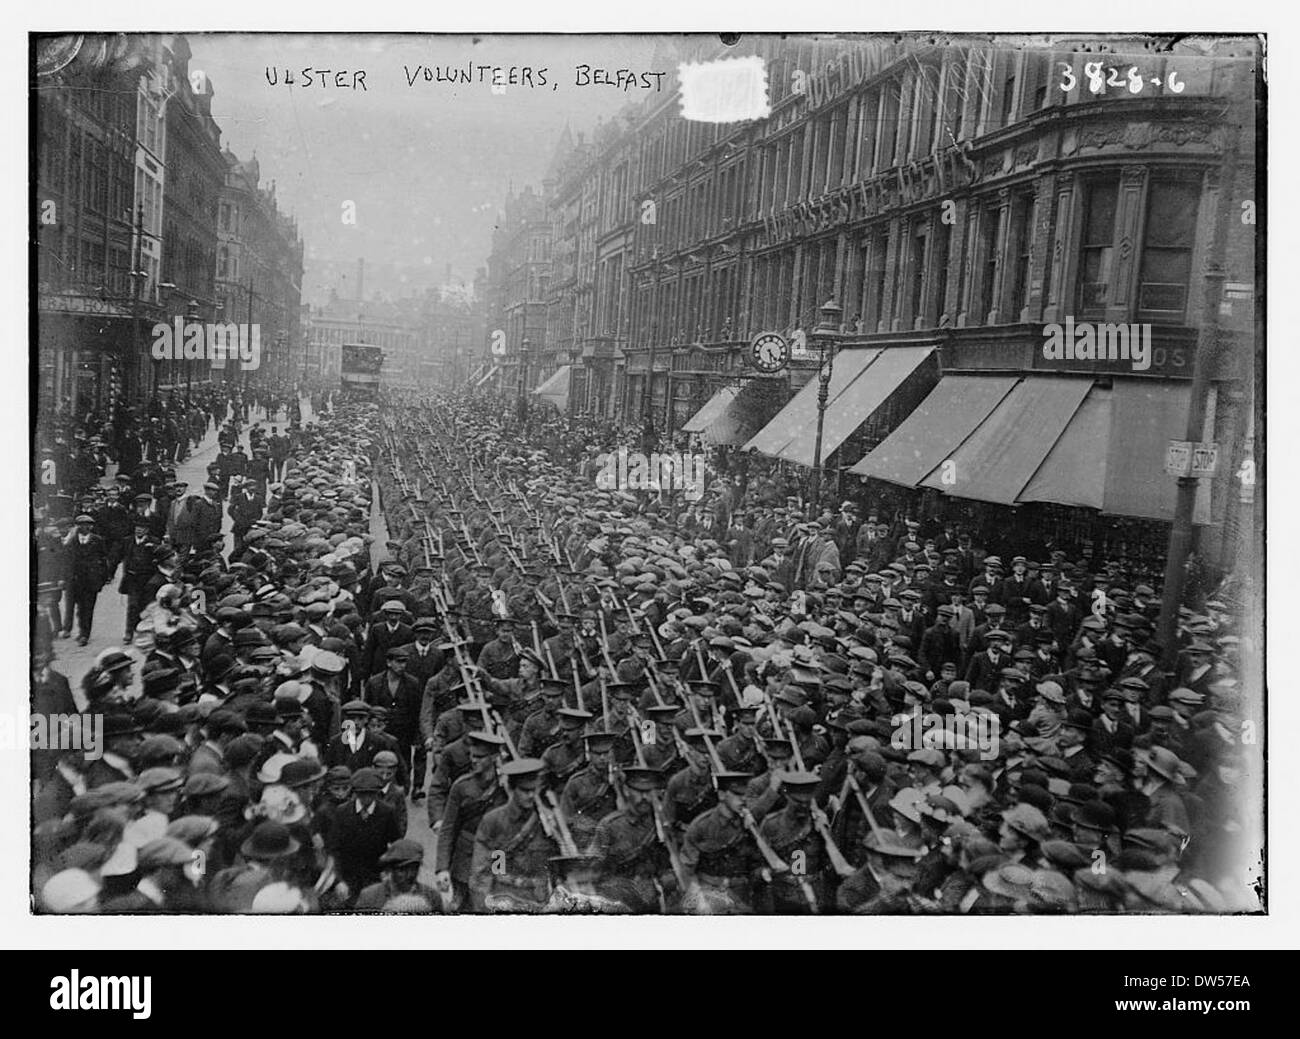 Ulster Volunteers, Belfast (LOC) Stock Photo